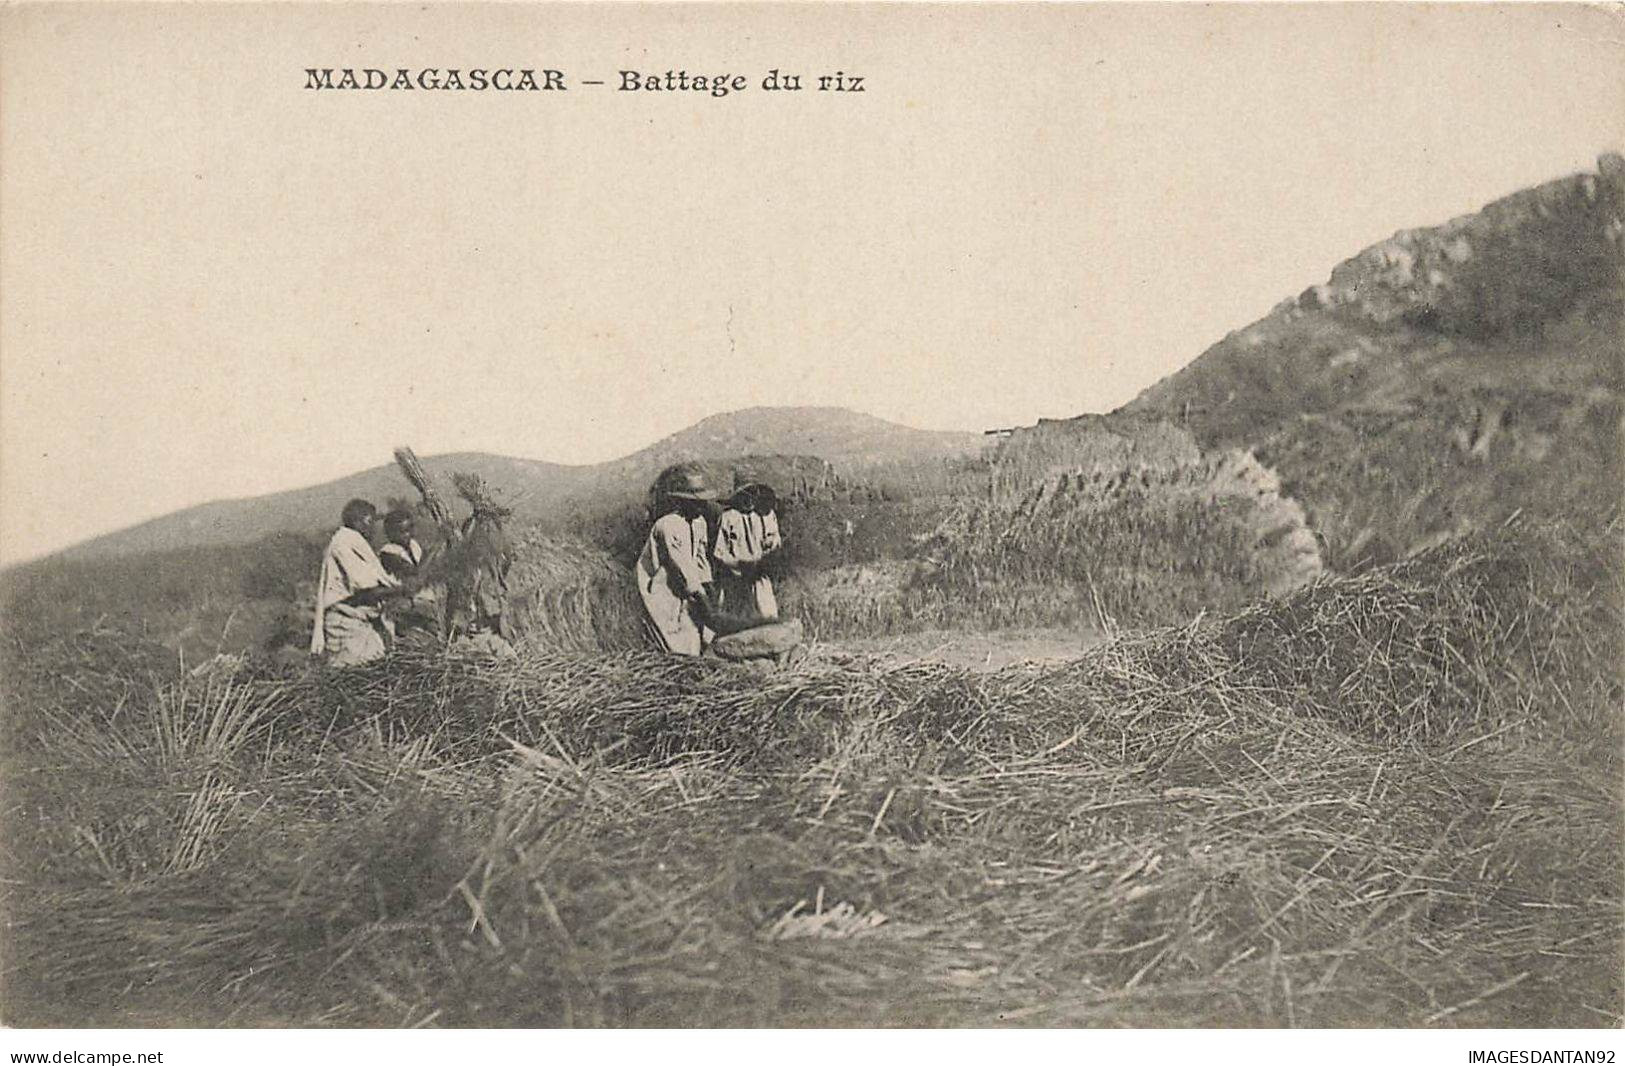 MADAGASCAR #27918 BATTAGE DU RIZ - Madagascar